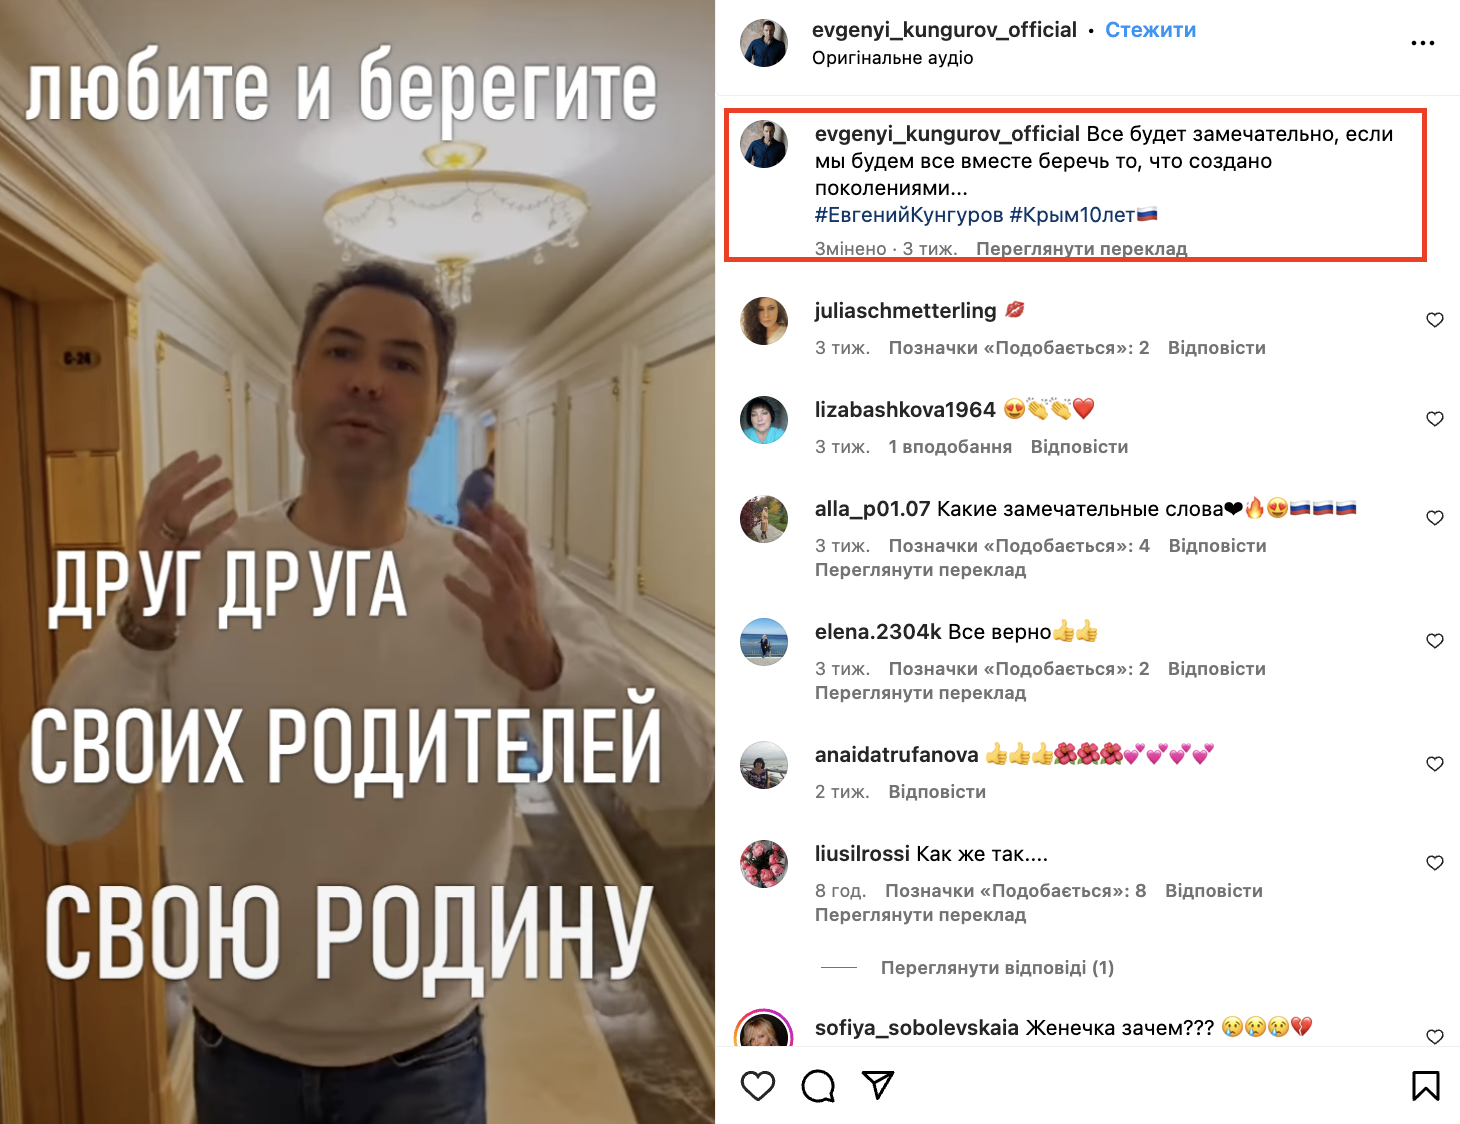 Российский певец Евгений Кунгуров покончил с собой: выступал "на разогреве" у Путина и в оккупированном Херсоне